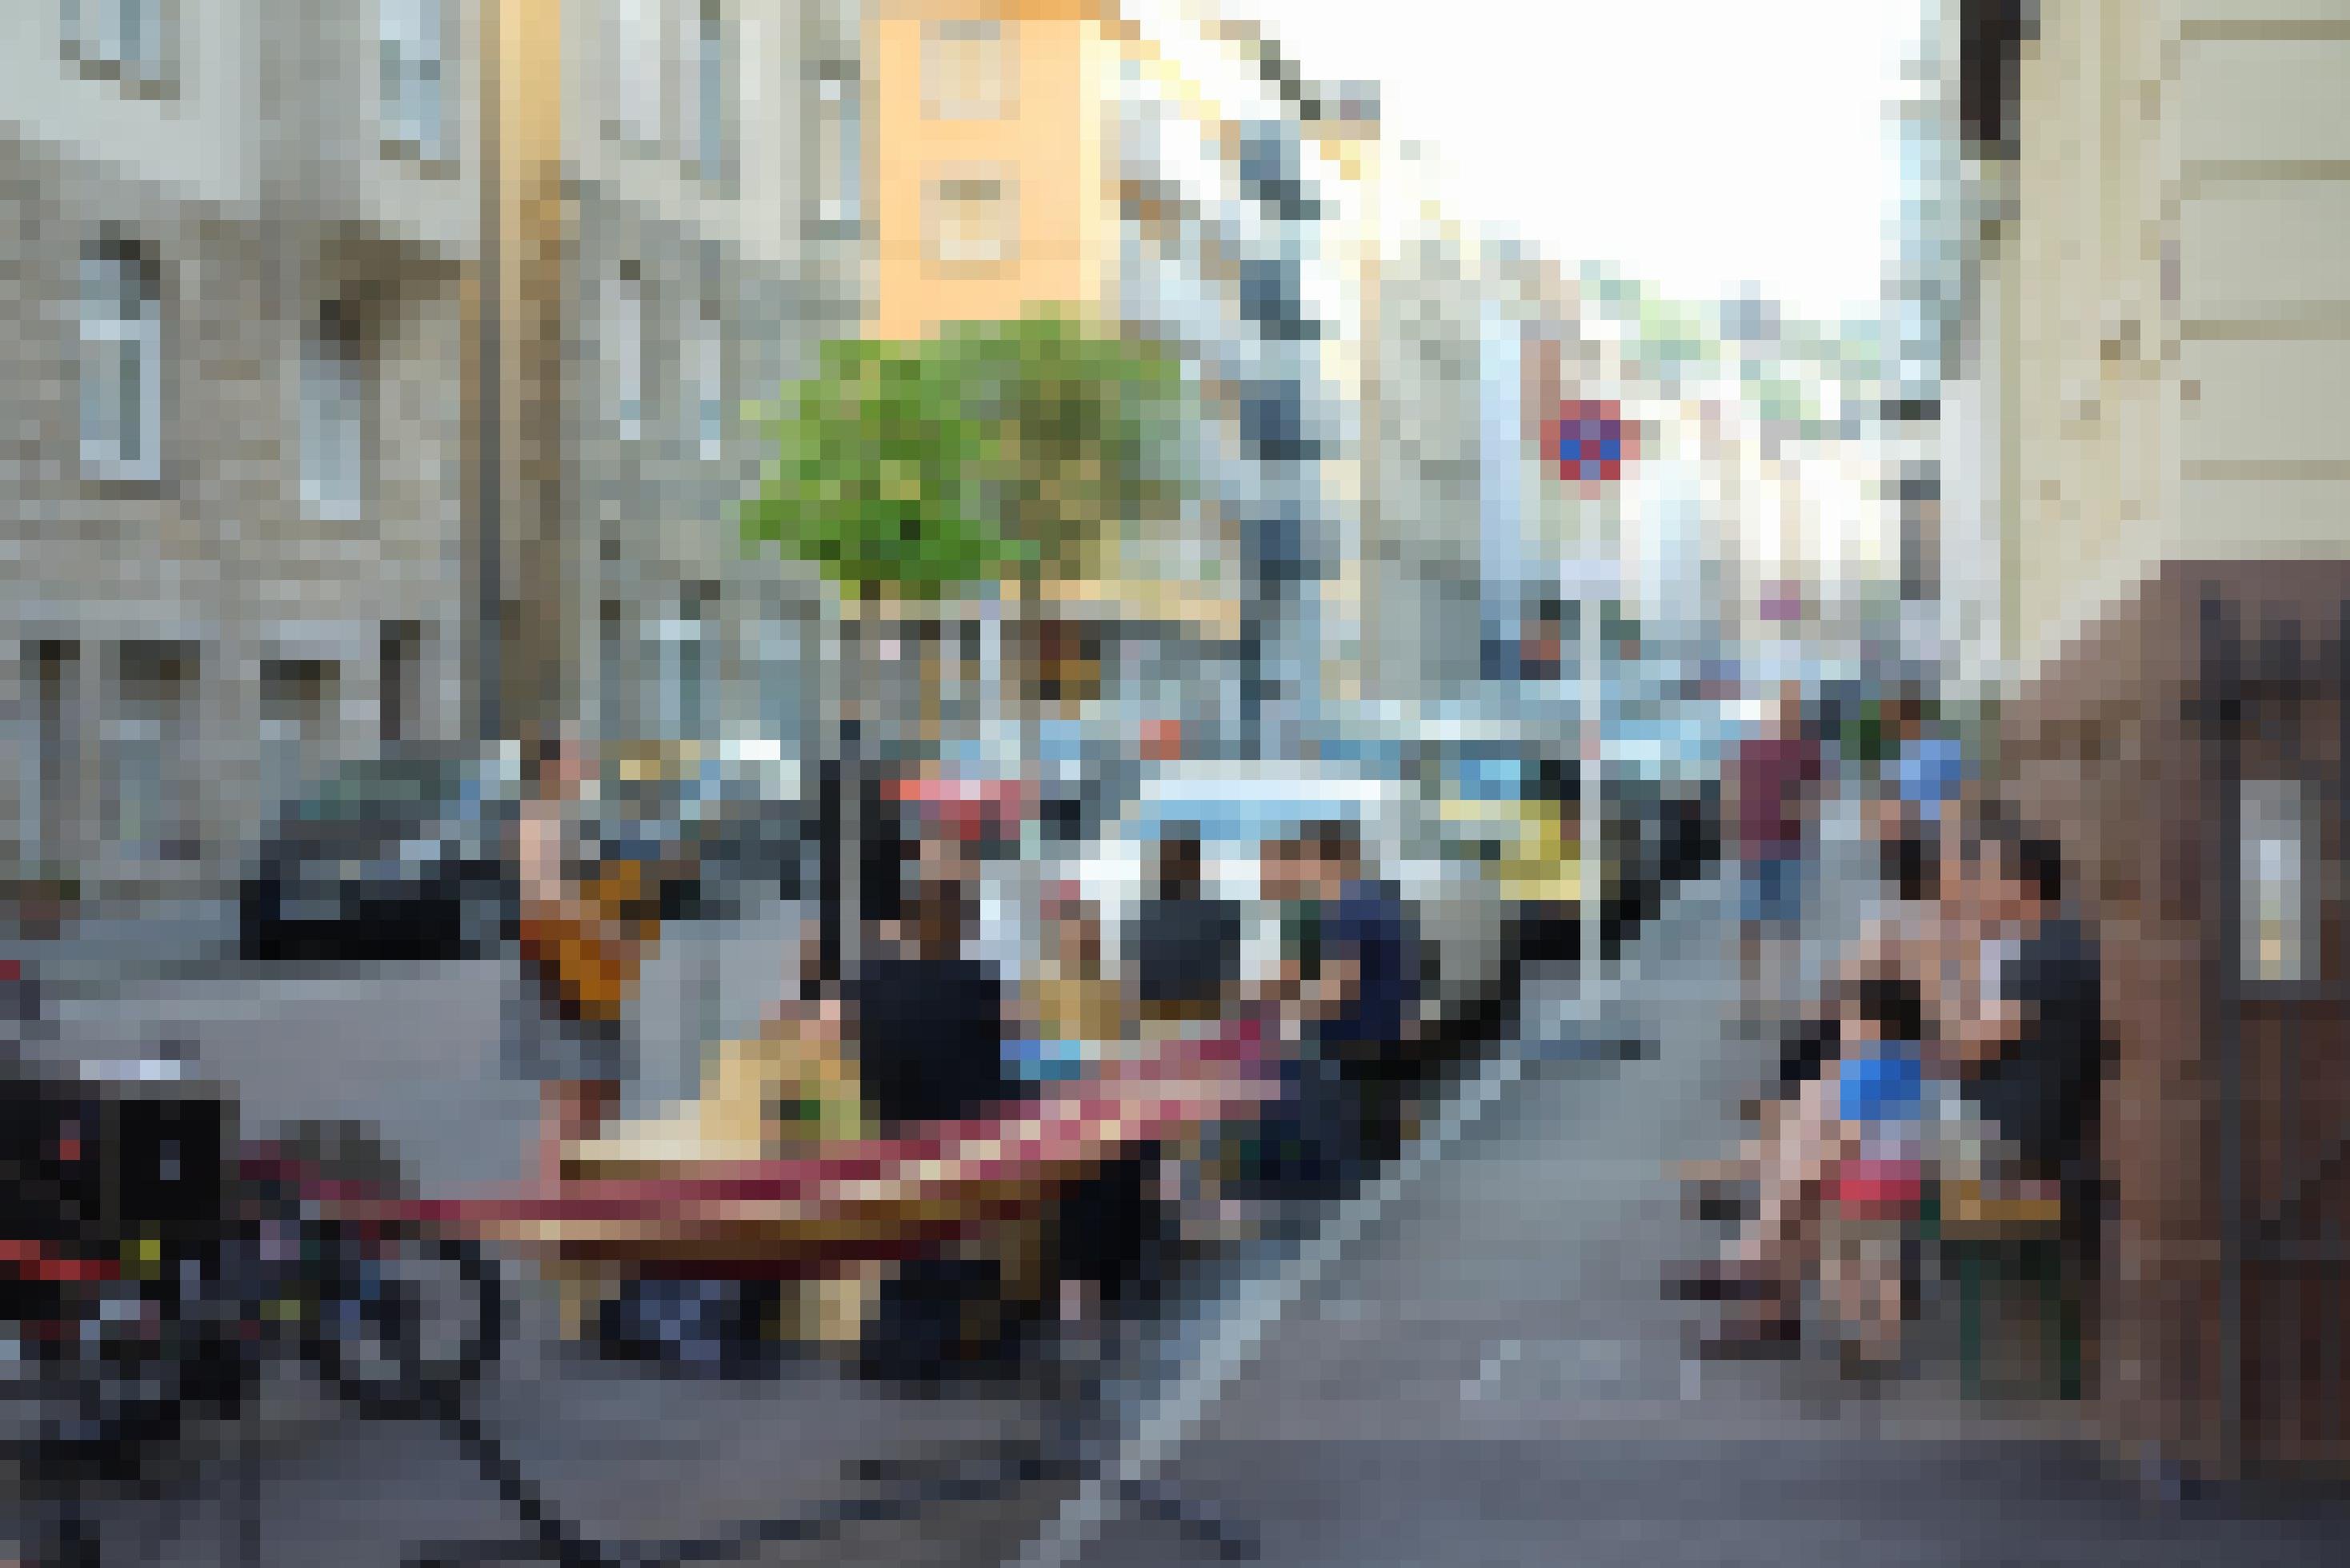 Die Anwohner sitzen auf mitgebrachten Bierbänken an der Hauswand und lauschen einer Sängerin, die auf der Straße steht und singt